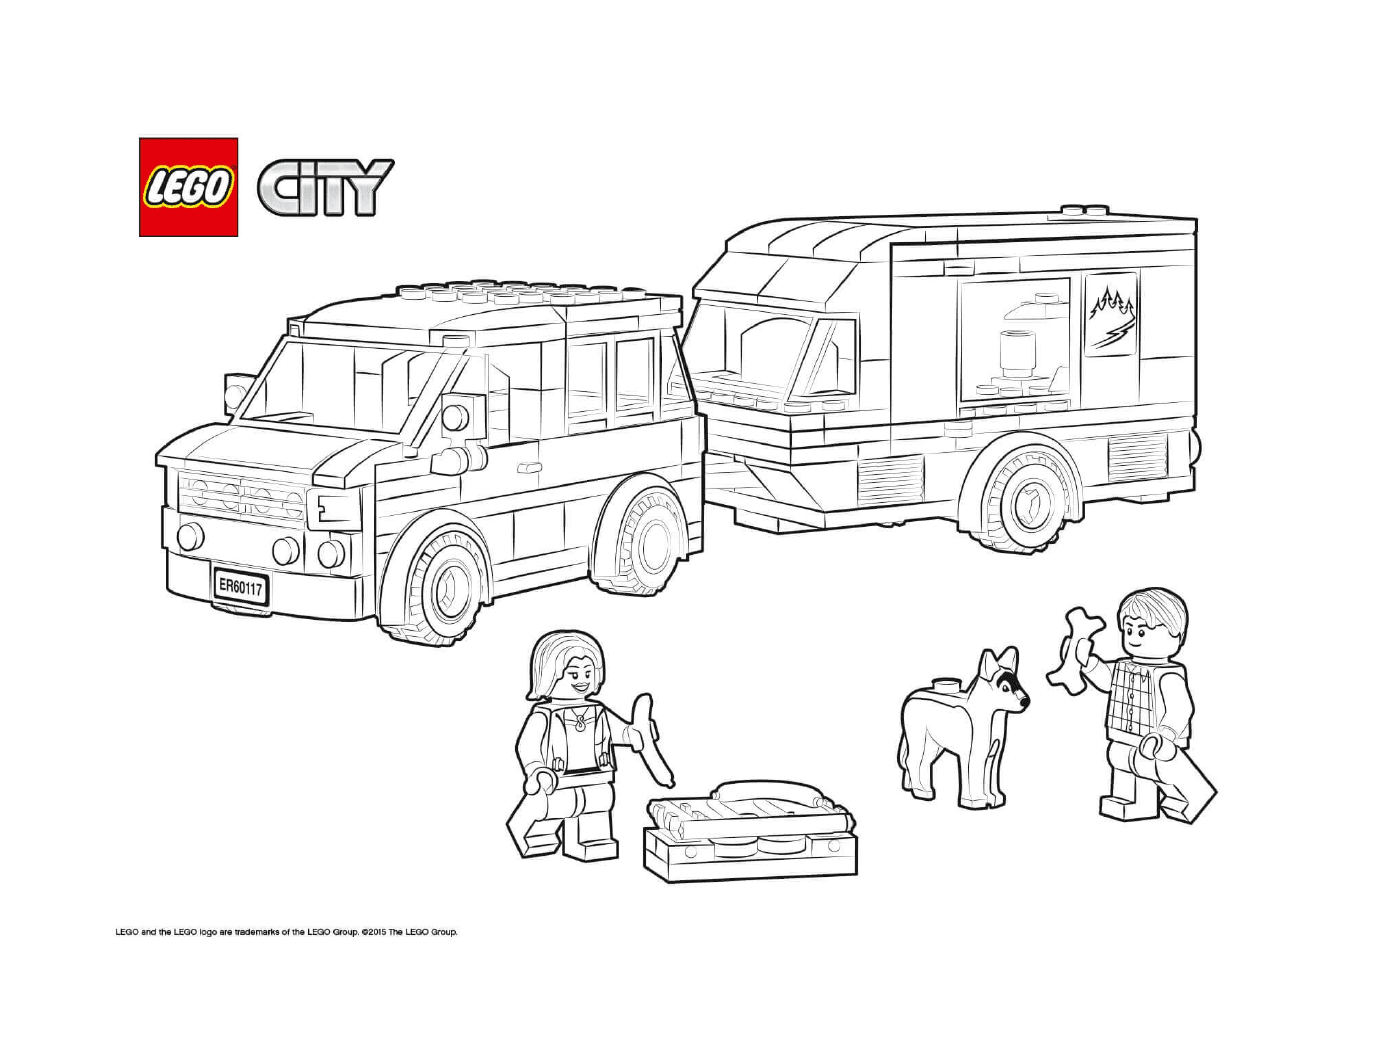  سيارة من طراز Lego City ورافعة 